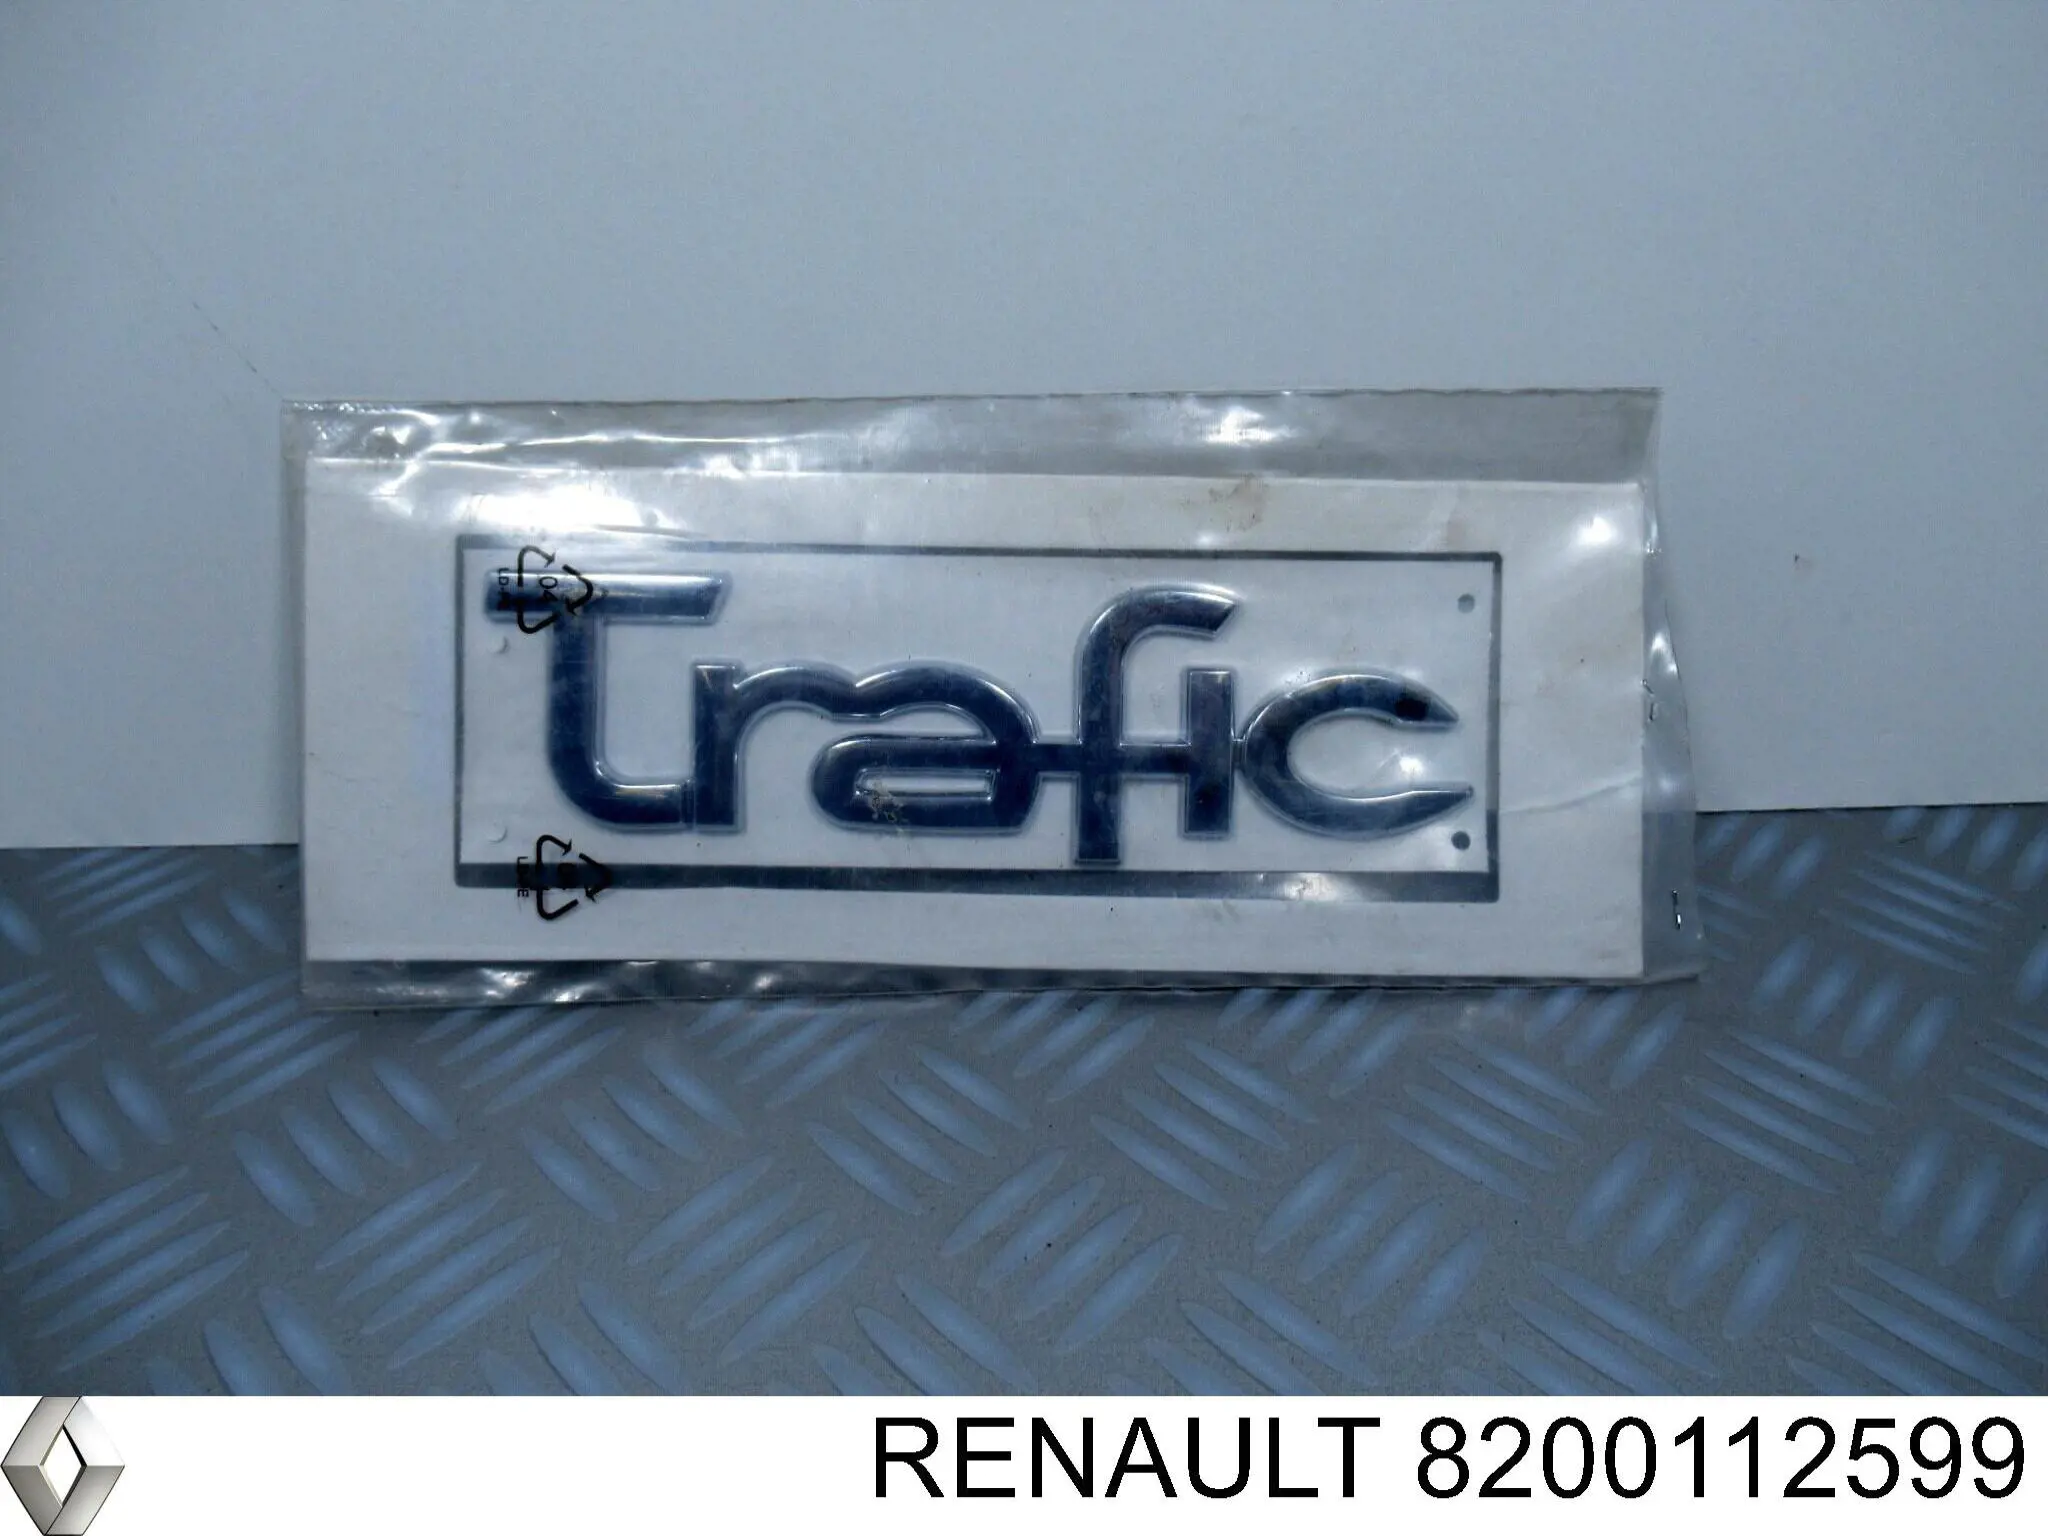 8200112599 Rotweiss эмблема крышки багажника (фирменный значок)